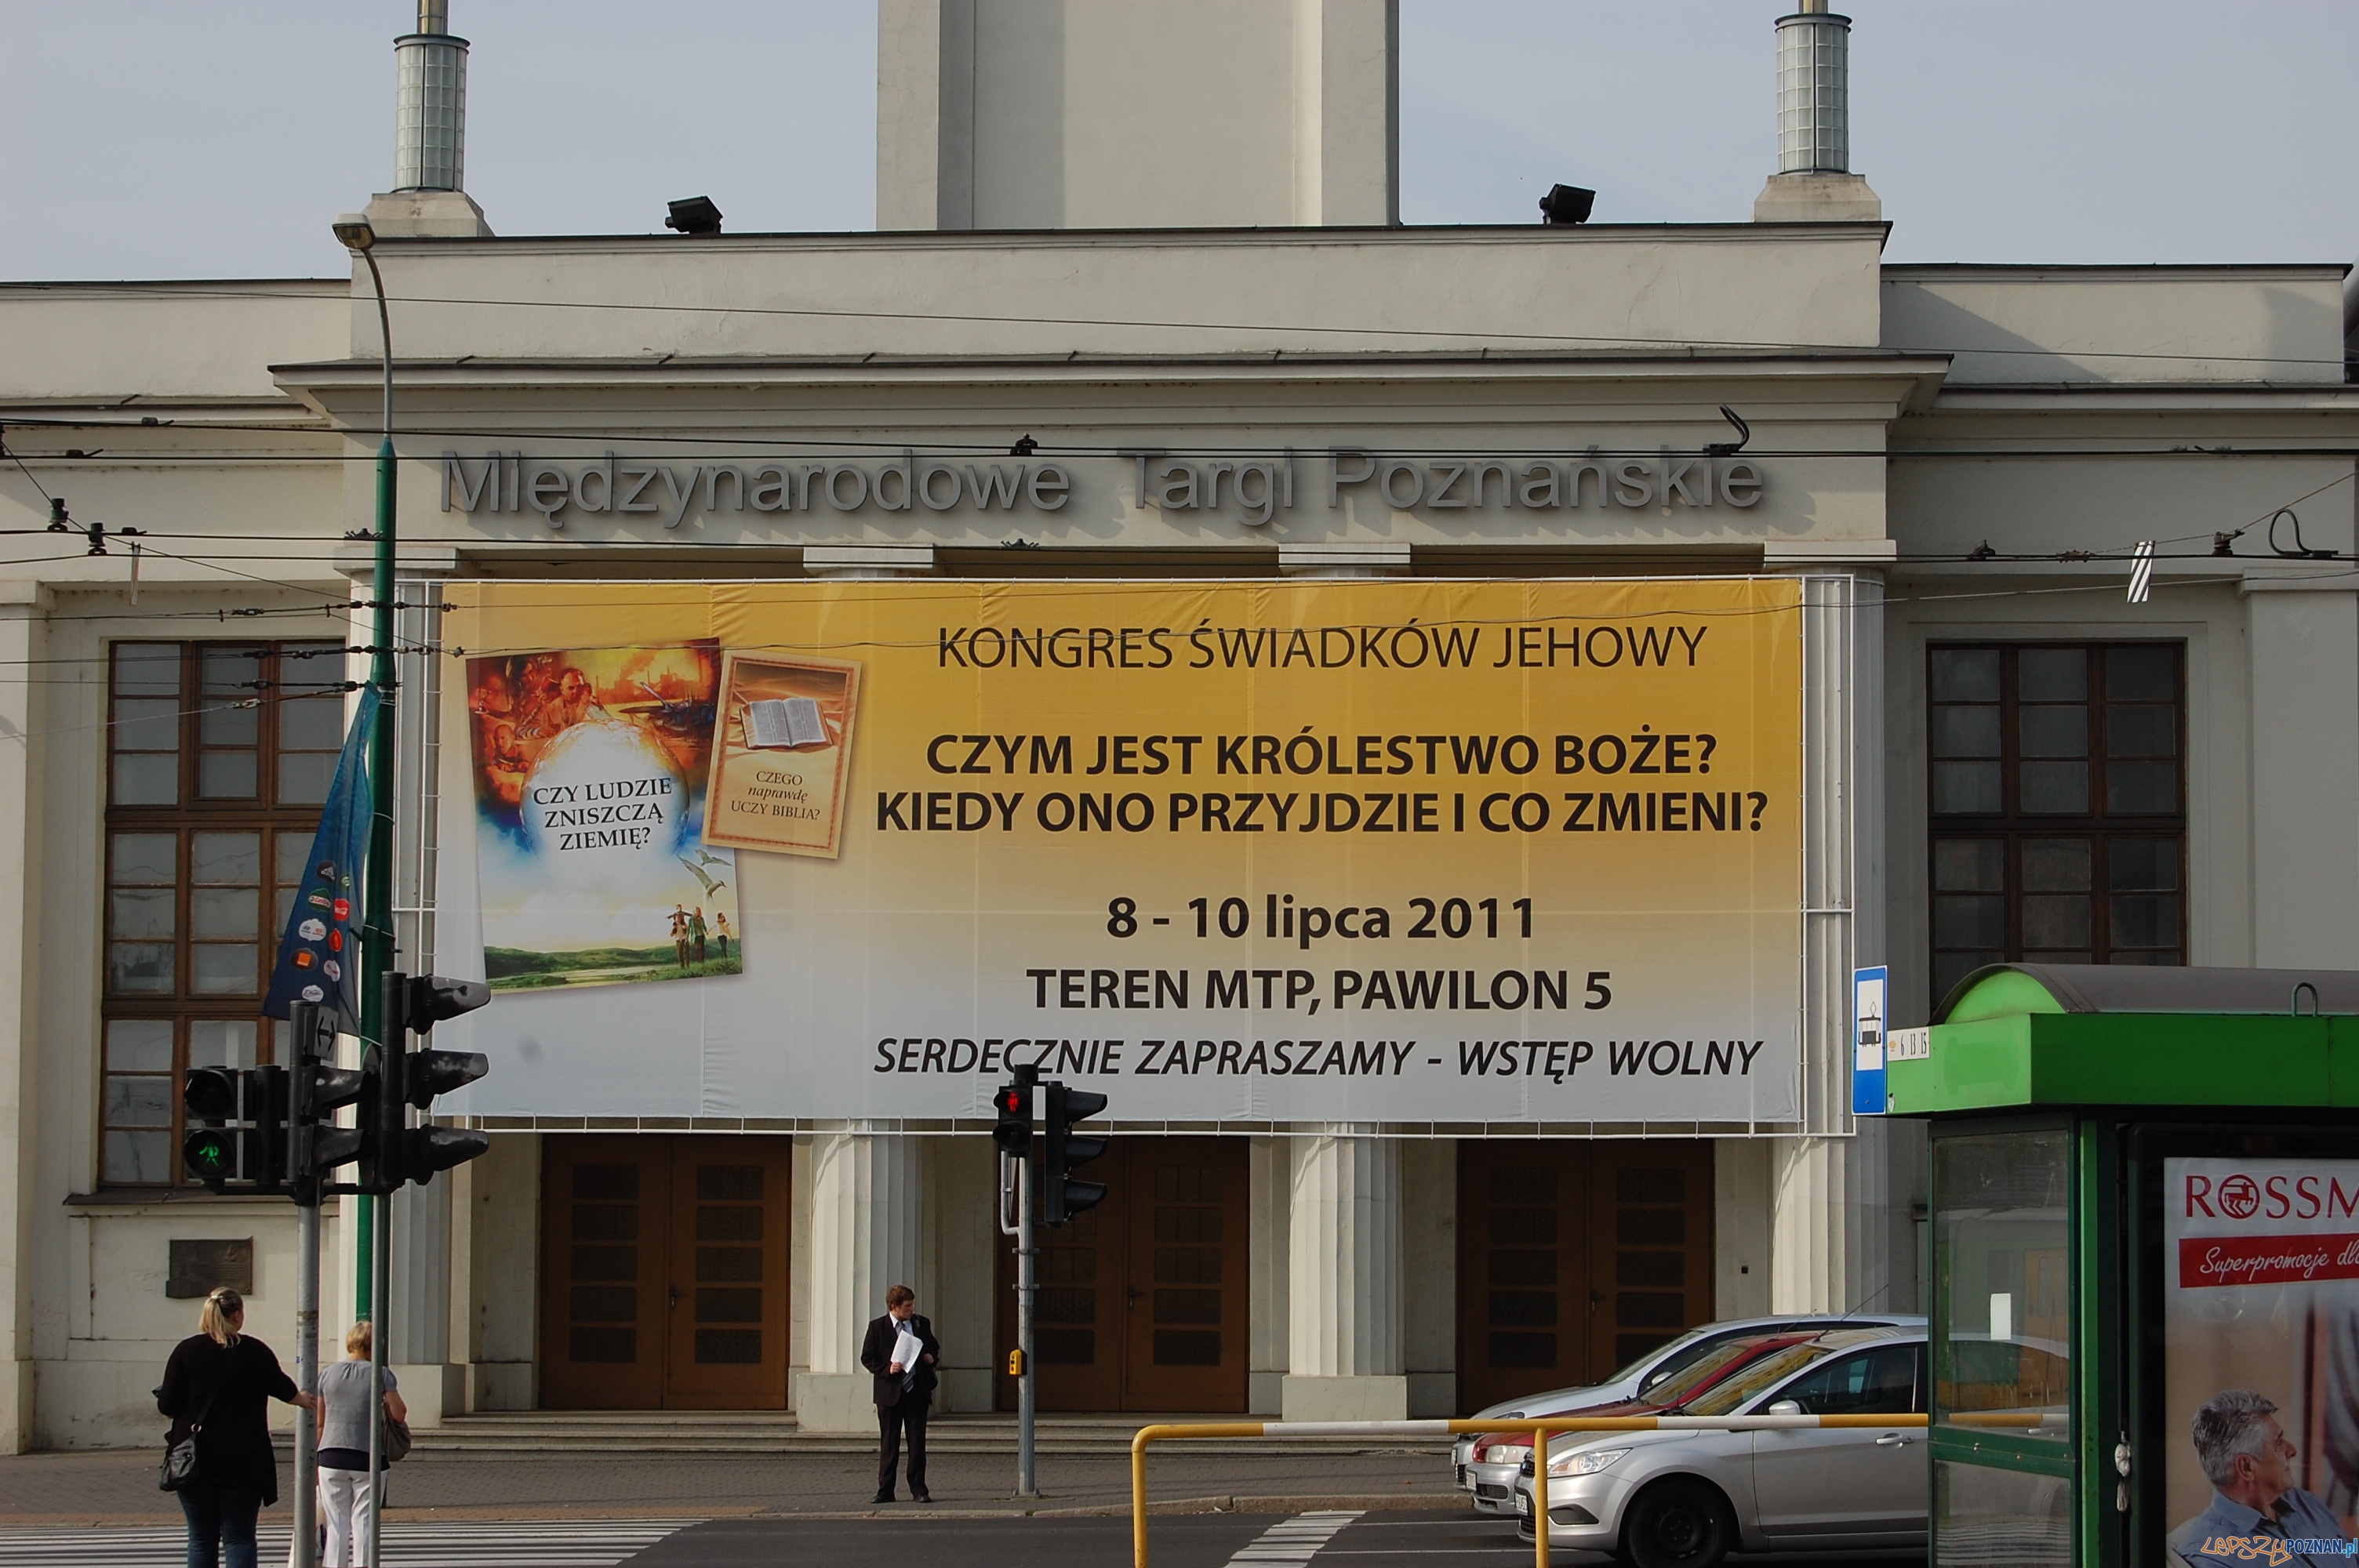 Kongres Świadków Jehowy w Poznaniu  Foto: Kongres Świadków Jehowy w Poznaniu